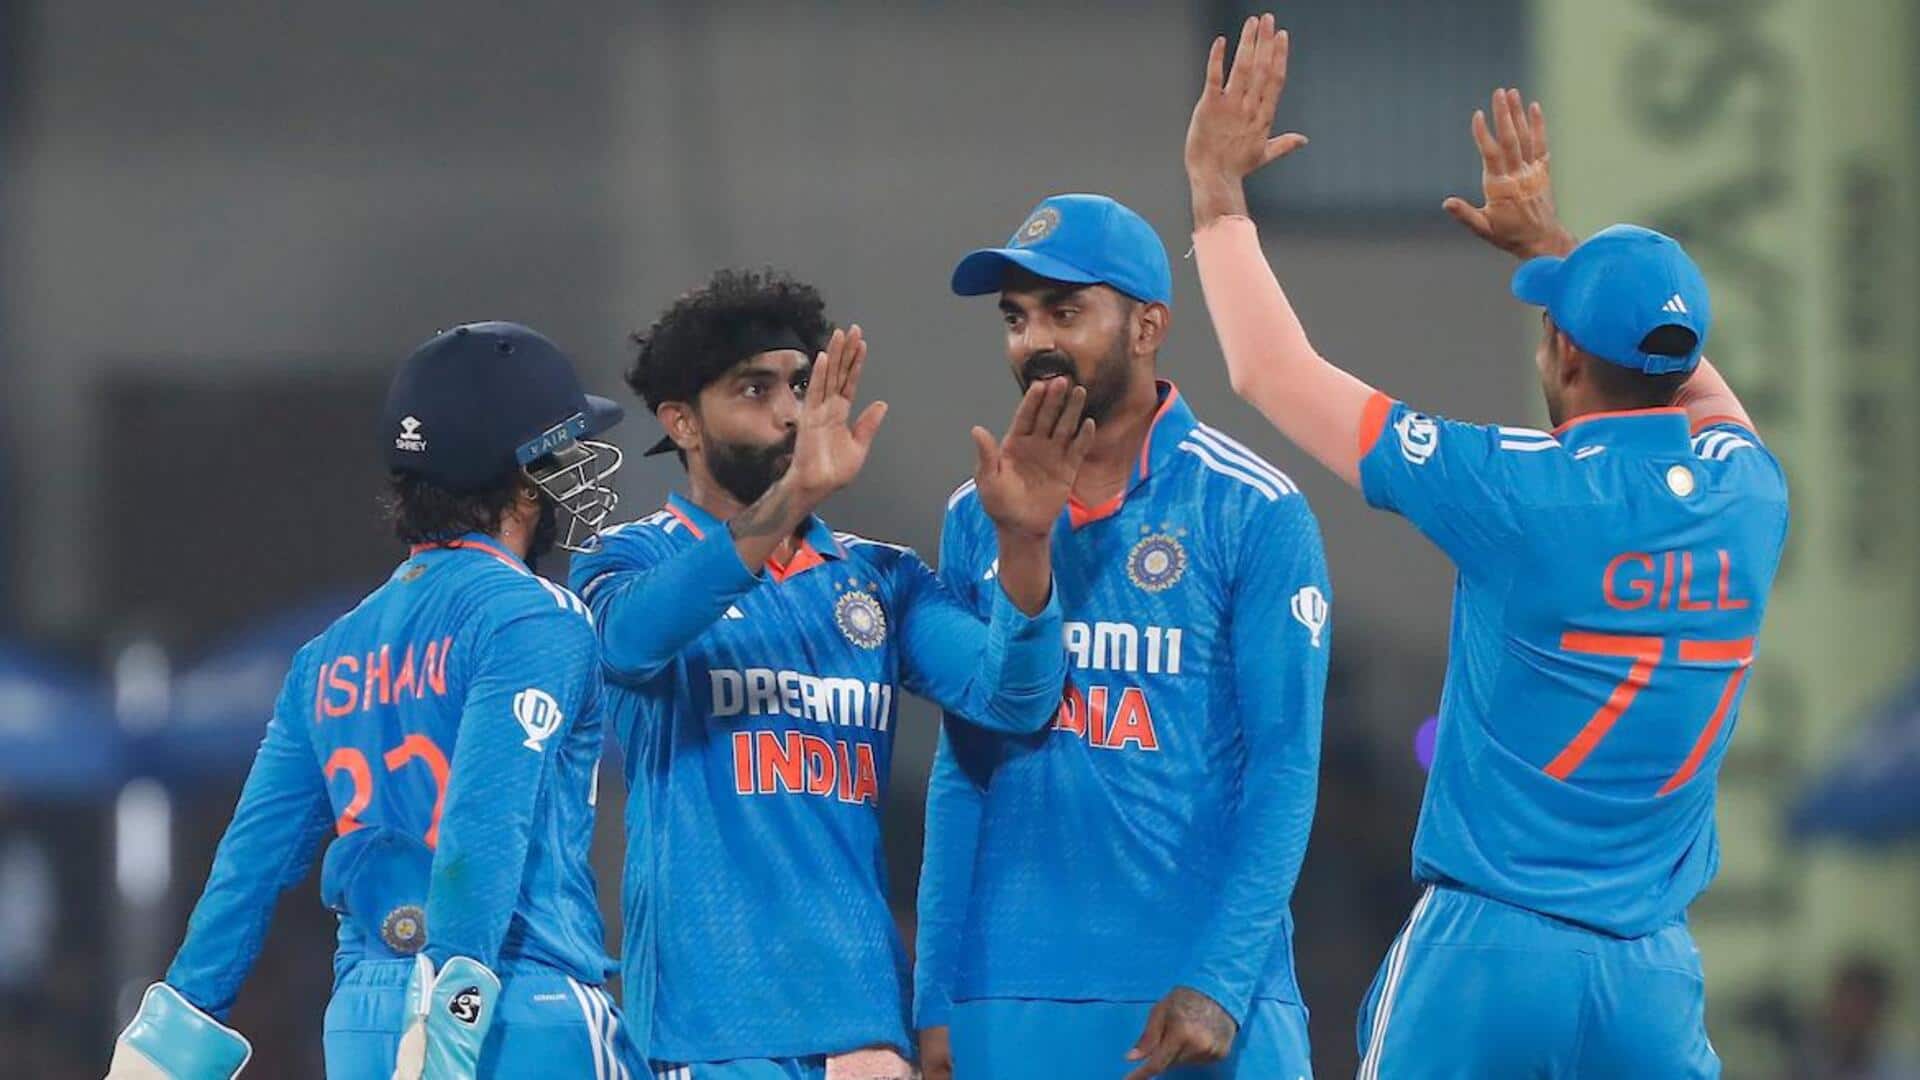 भारत बनाम ऑस्ट्रेलिया: रविंद्र जडेजा ने चटकाए 3 विकेट, जानिए उनके आंकड़े